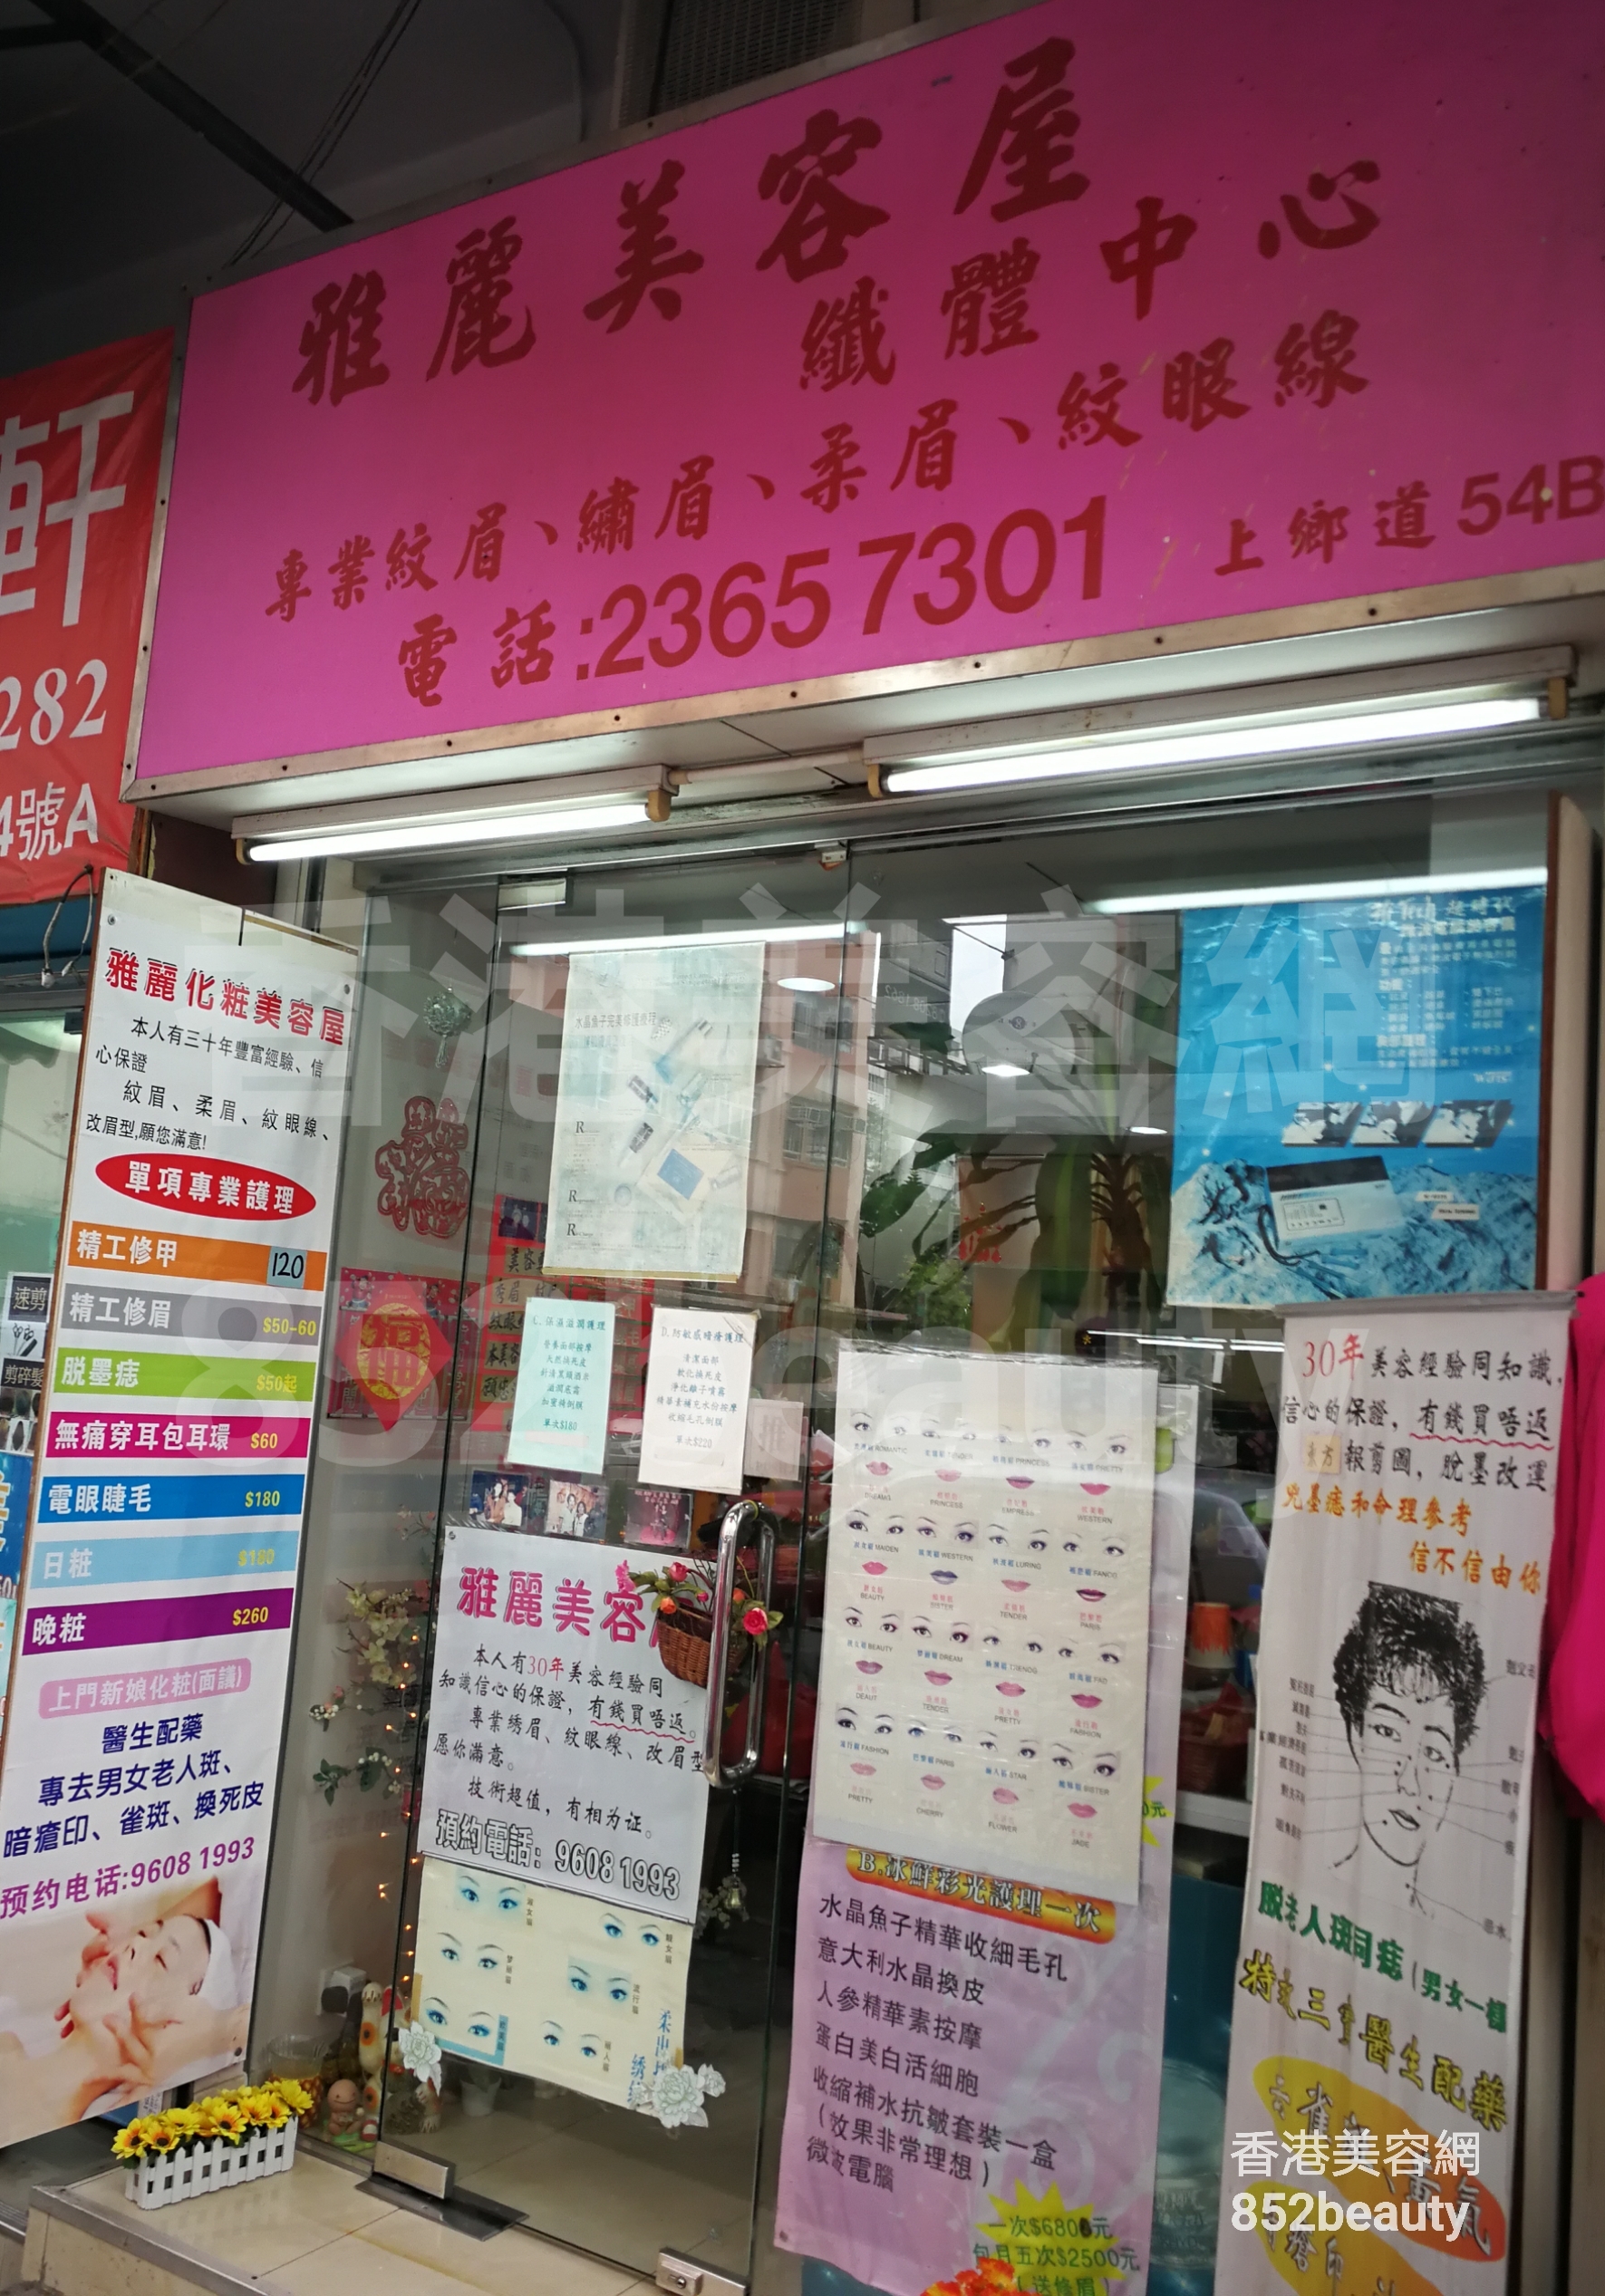 香港美容網 Hong Kong Beauty Salon 美容院 / 美容師: 雅麗美容屋 纖體中心